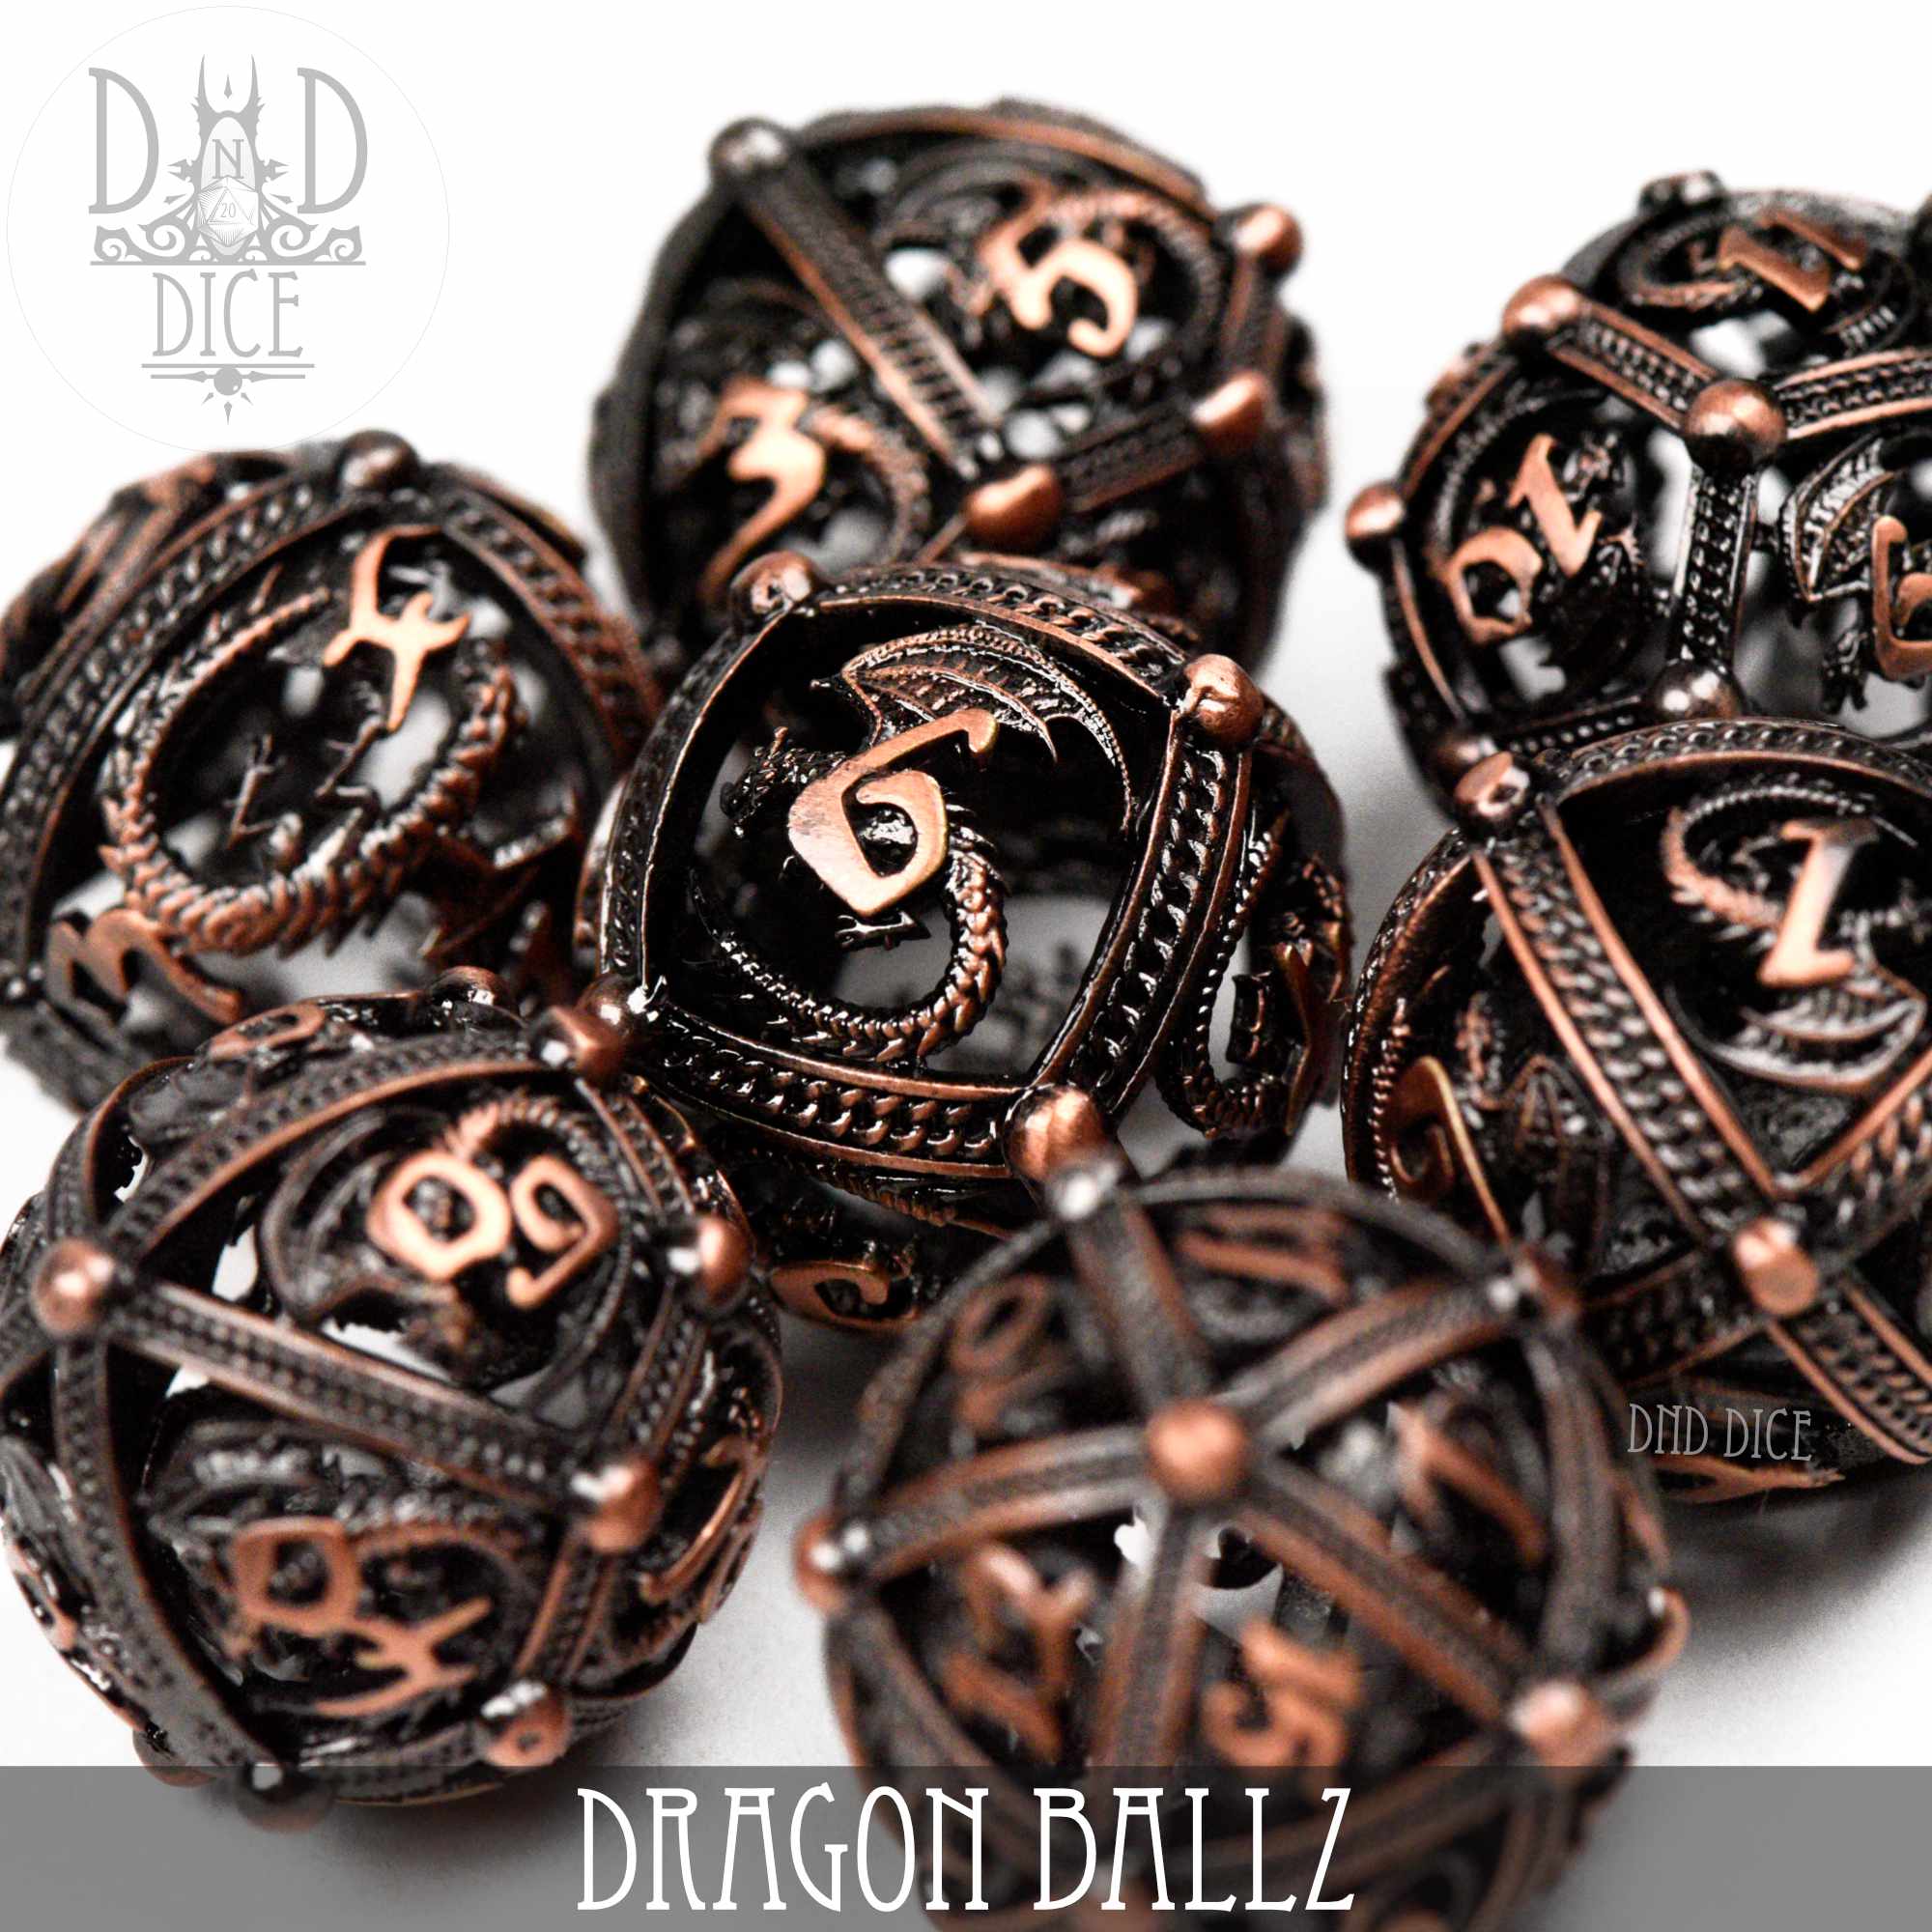 Dragon Ballz Metal Dice Set (Gift Box)